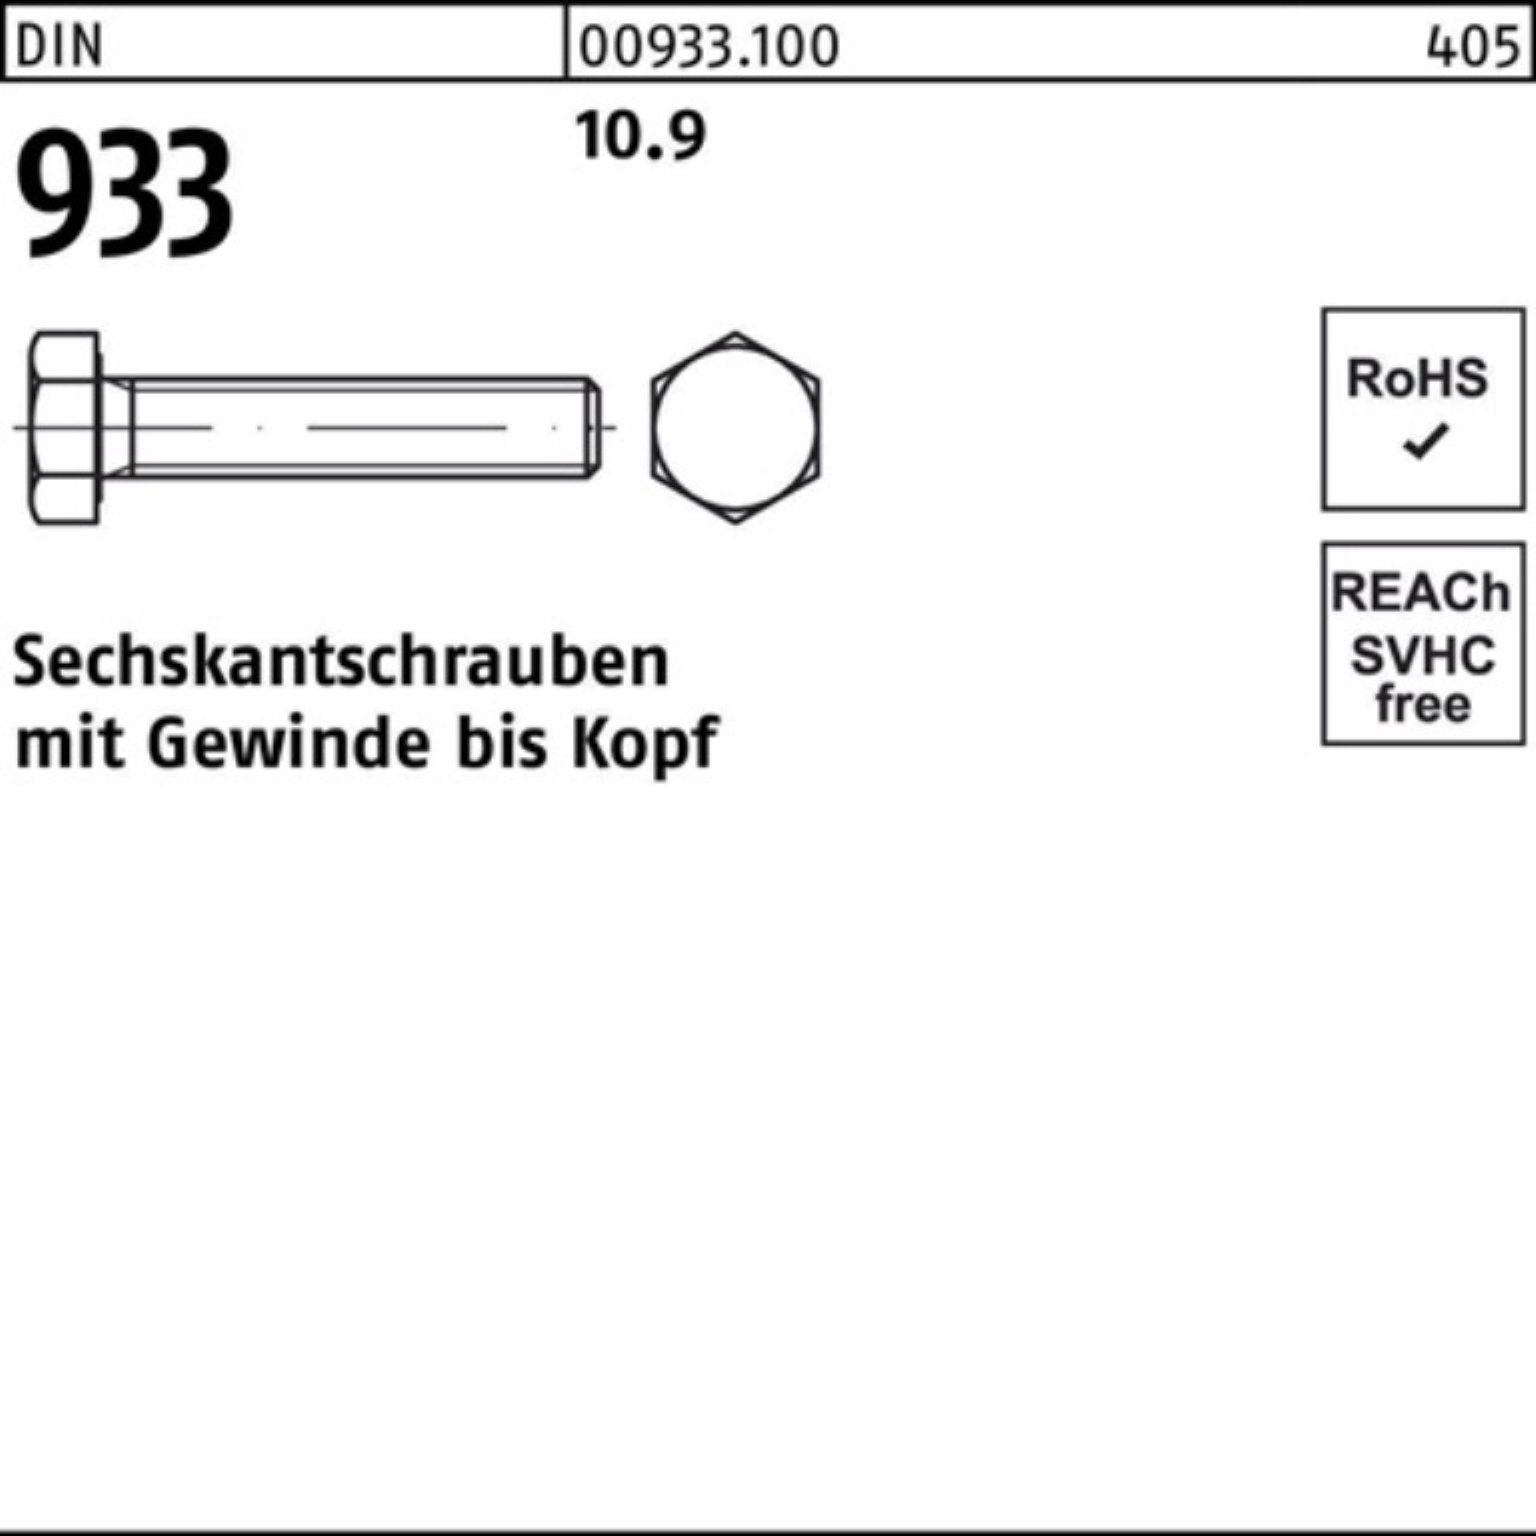 933 170 Sechskantschraube 100er Sechskantschraube Reyher Pack 25 93 10.9 Stück DIN DIN M20x VG